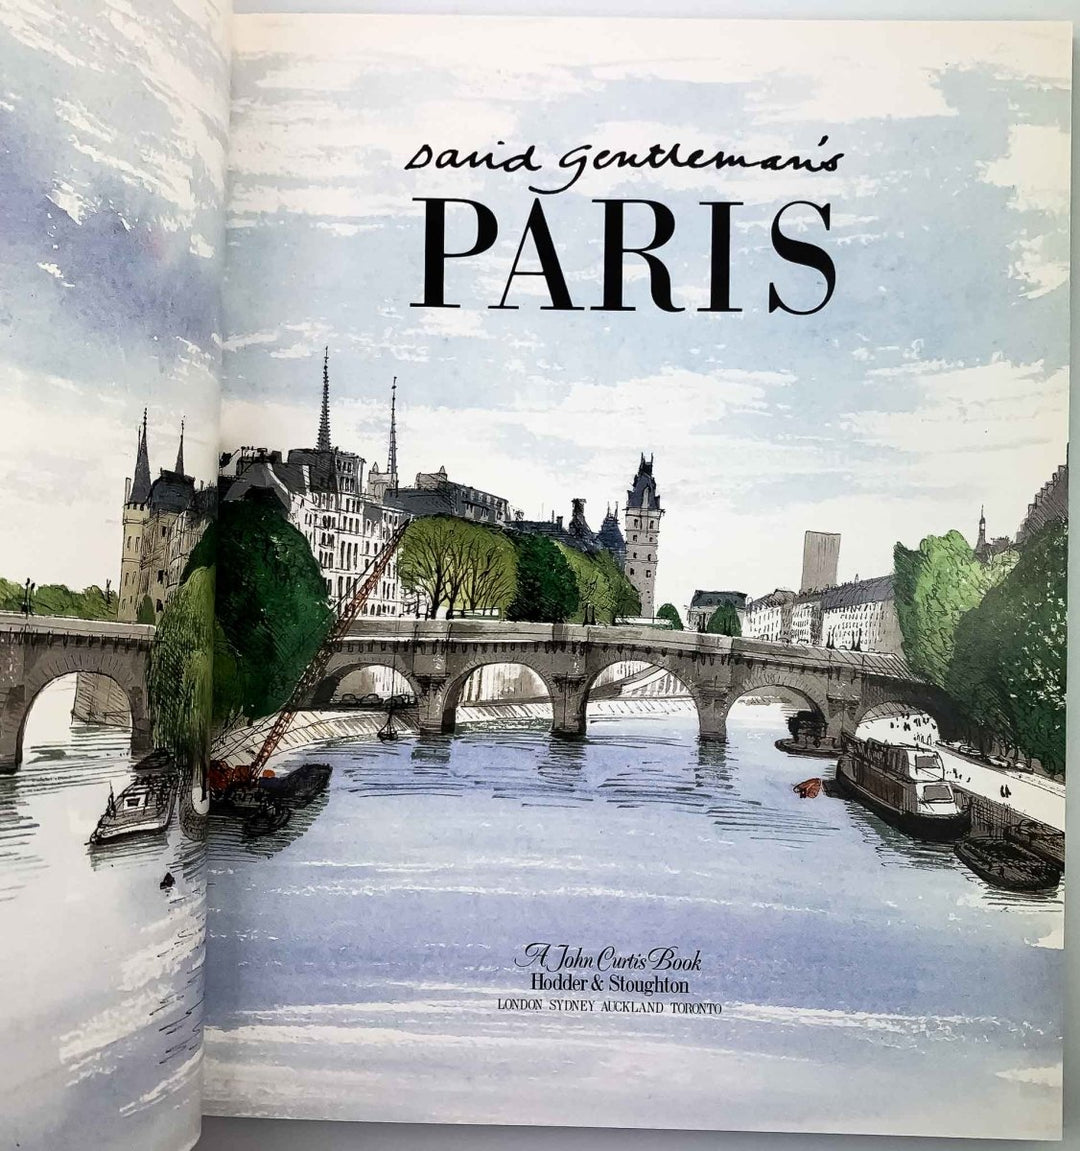 Gentleman, David - David Gentleman's Paris | image5